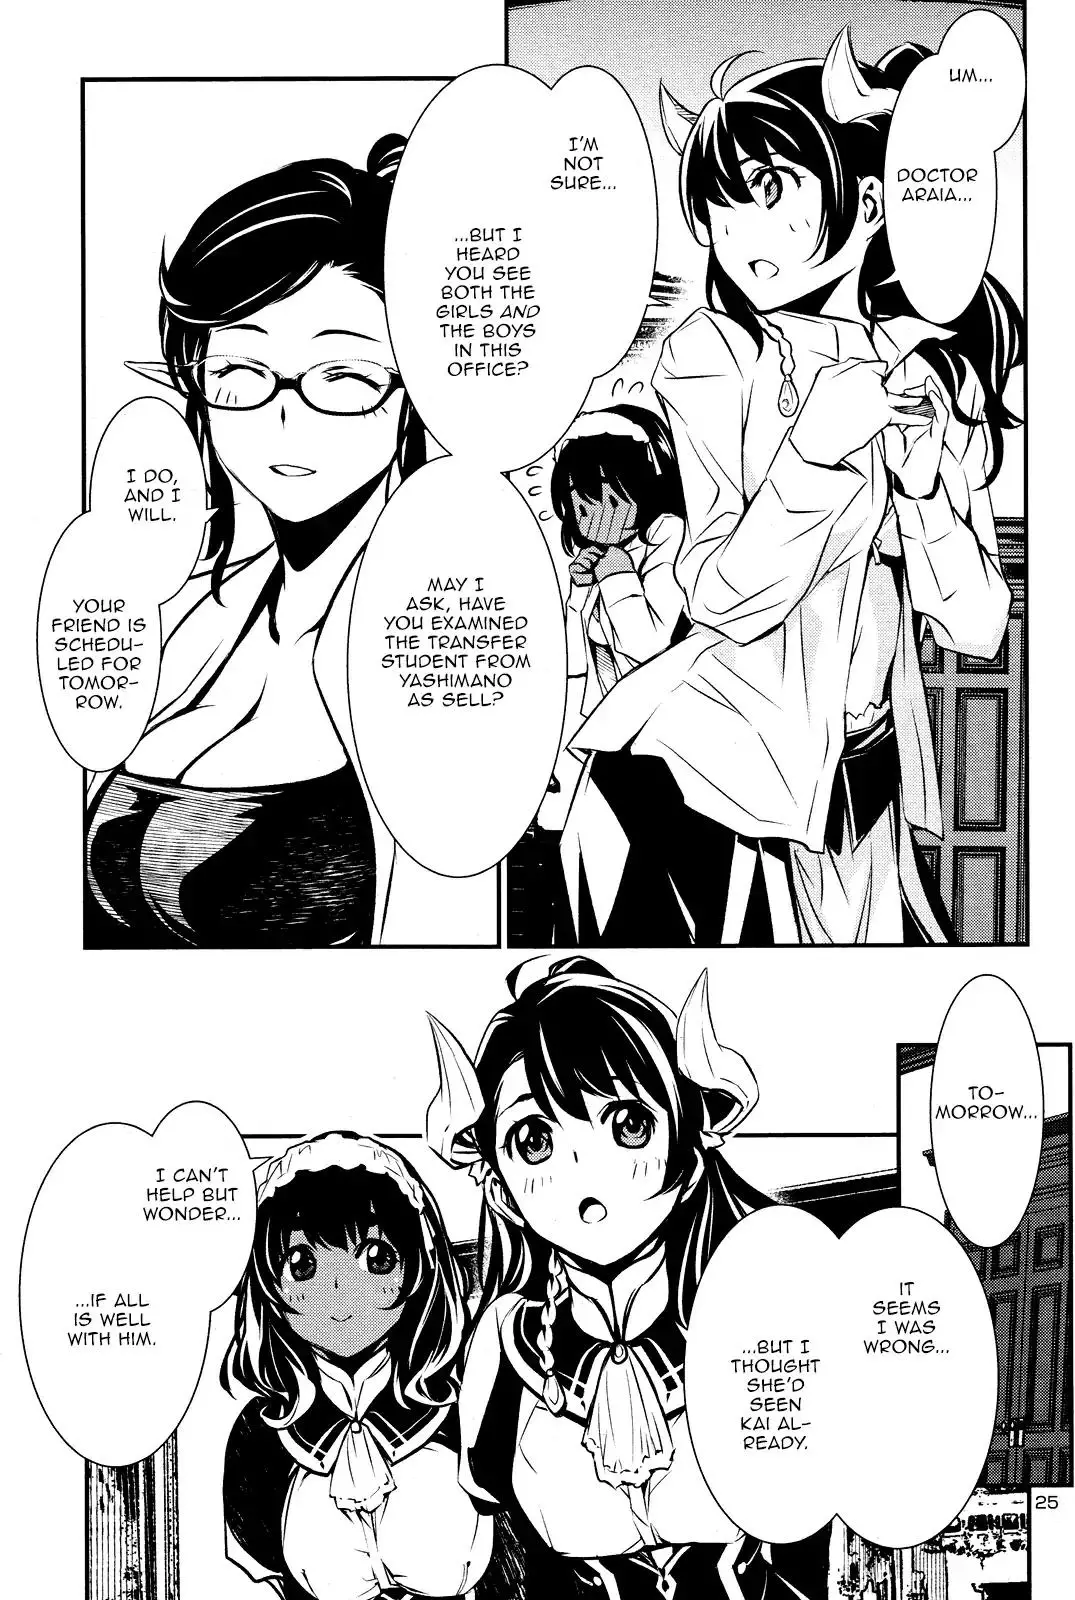 Shinju no Nectar - 31 page 23